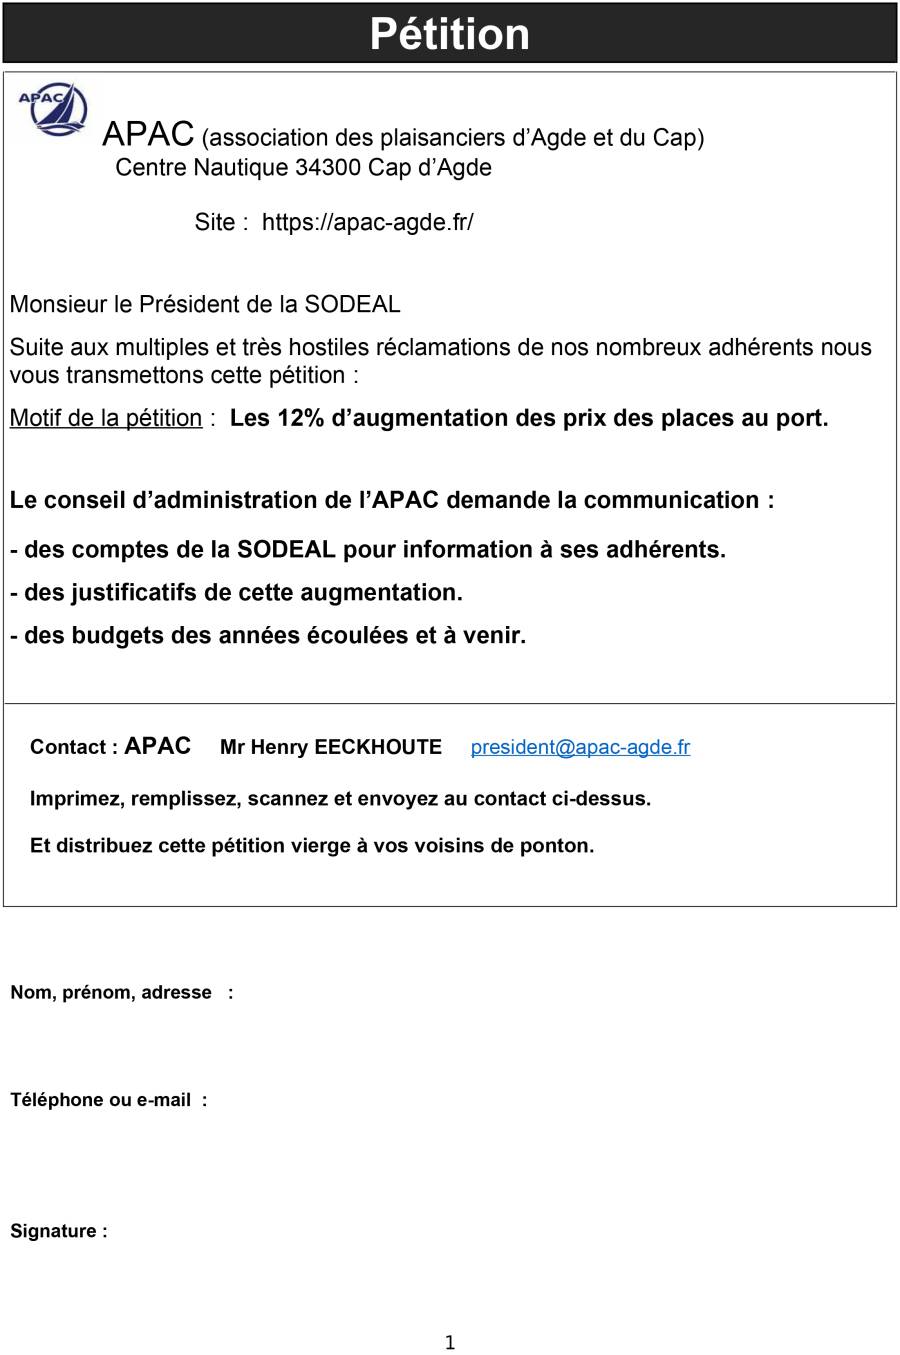 Cap d'Agde - Une pétition face à l'augmentation du prix des places au port !